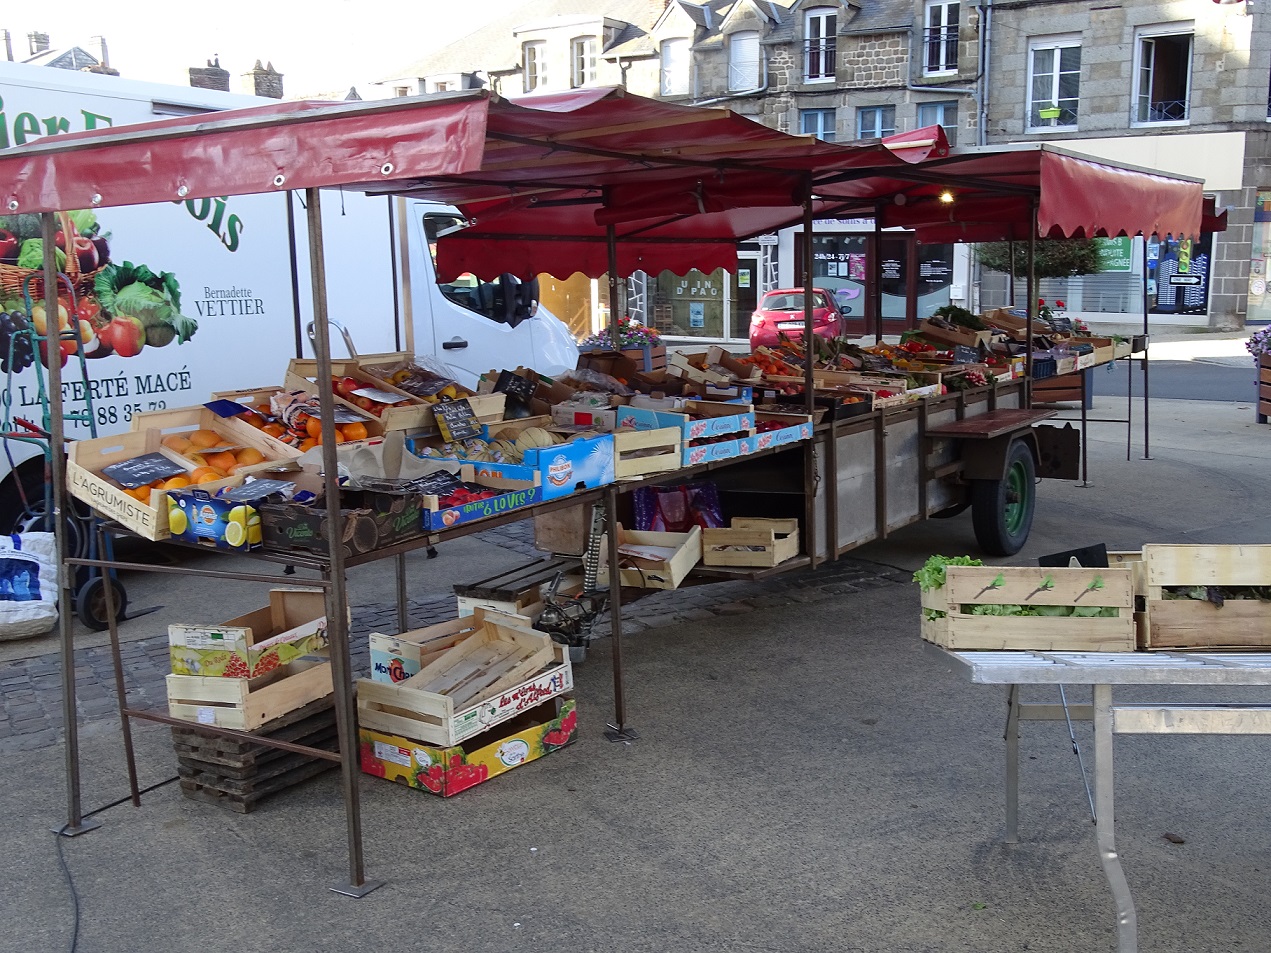 Vente de fruits et légumes sur les marchés ,  5 marchés semaine   Orne et Mayenne. Plus de détails par tel